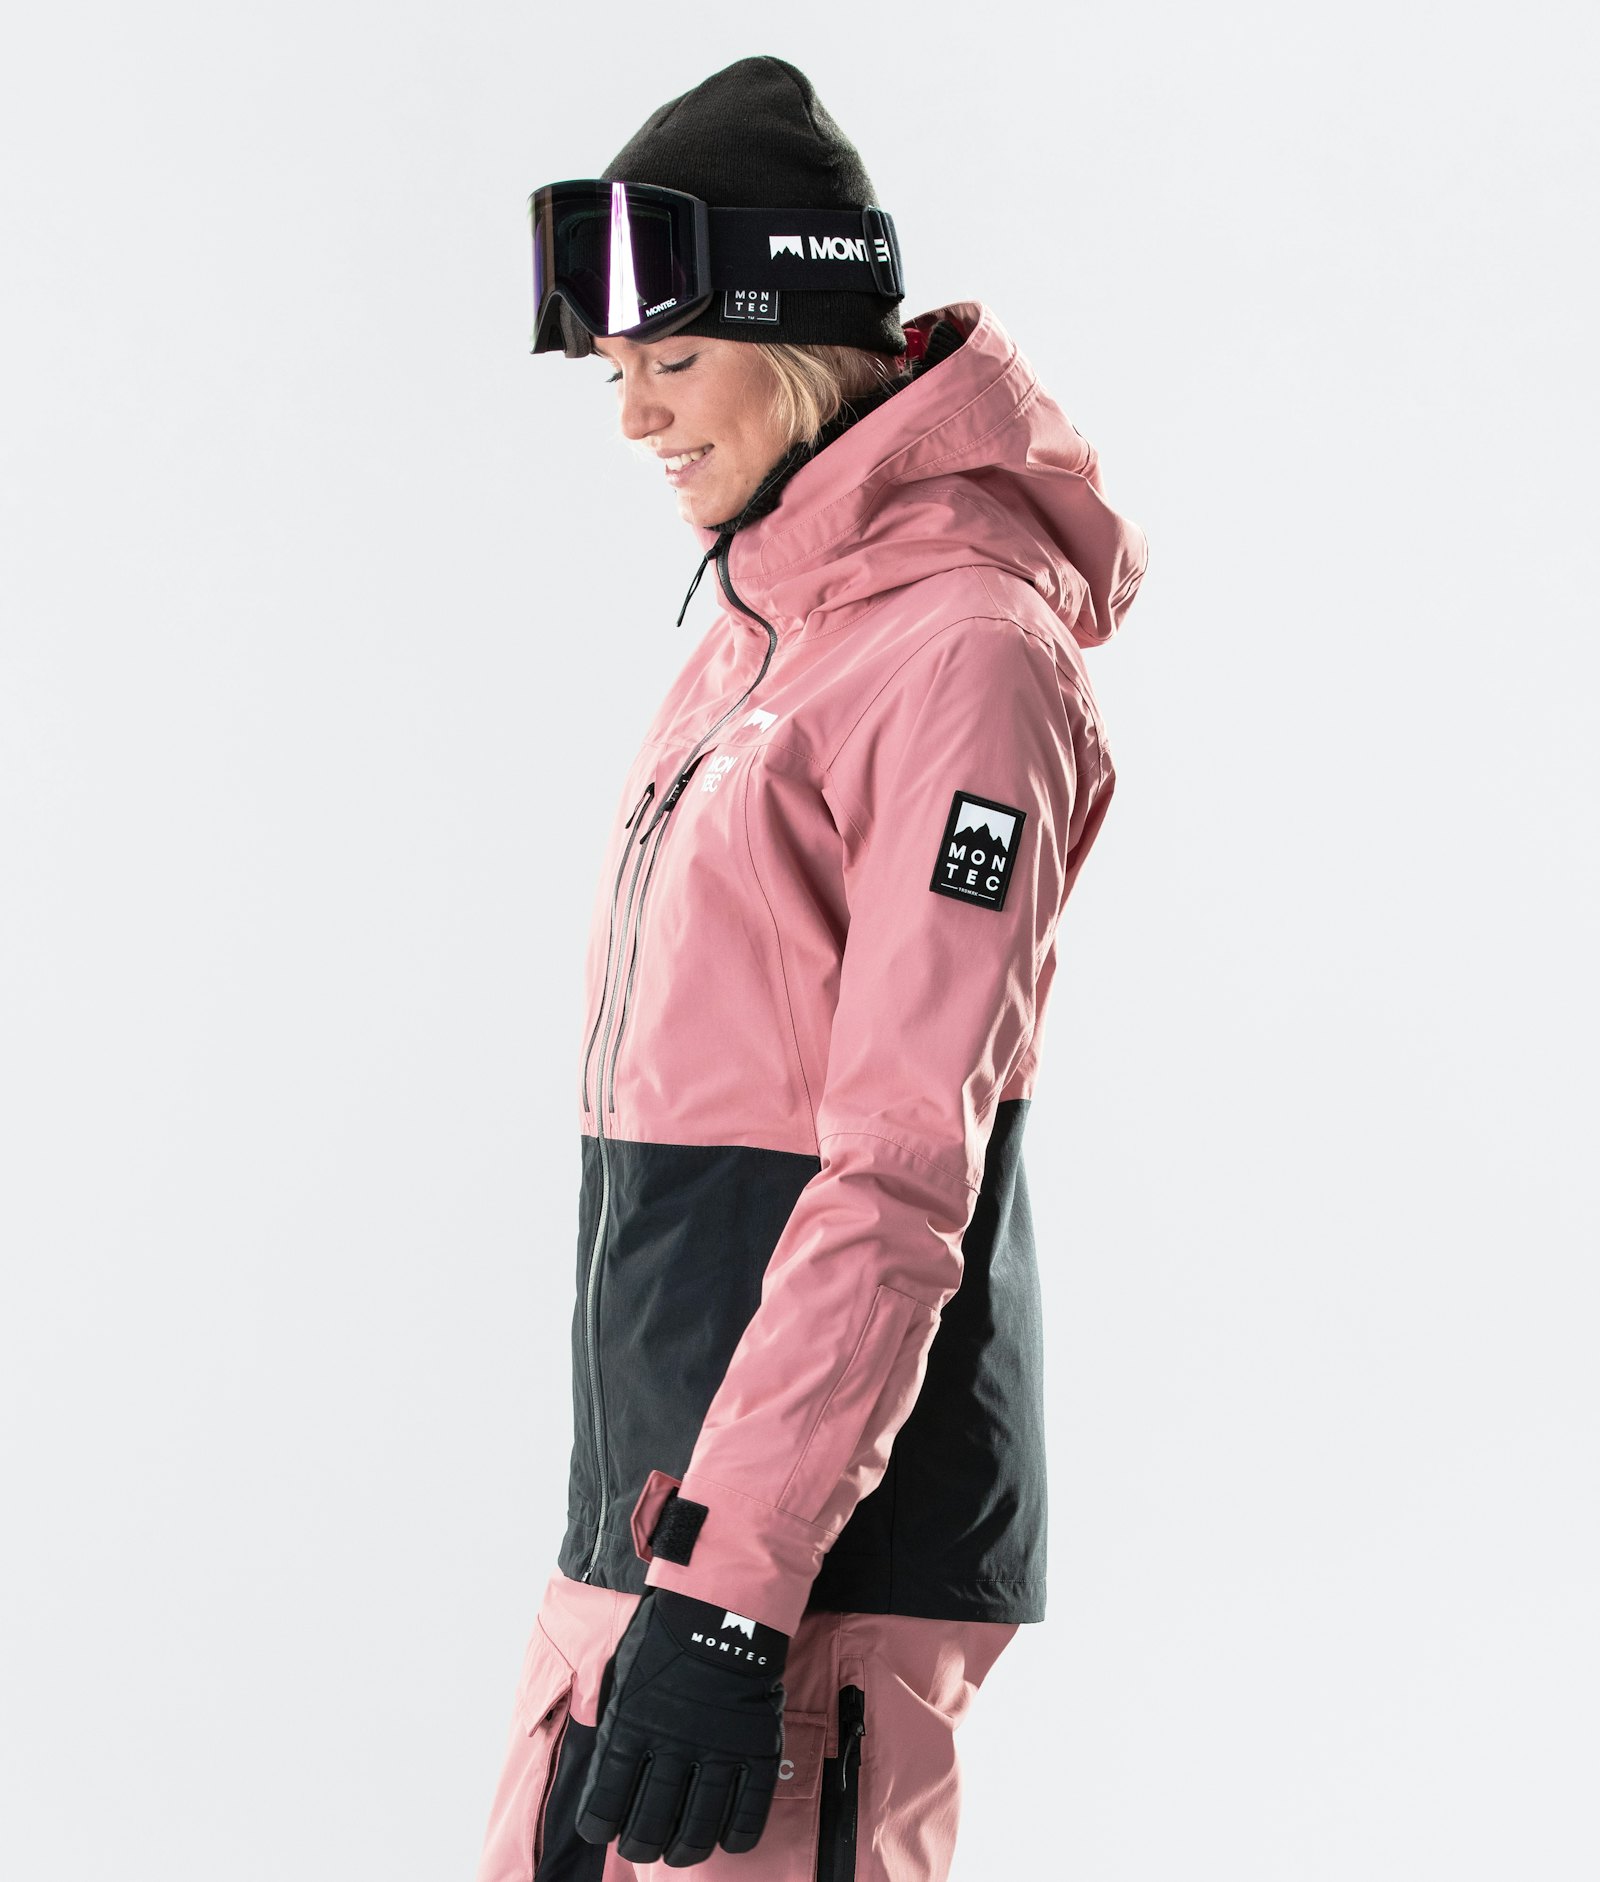 Moss W 2020 Snowboard Jacket Women Pink/Black